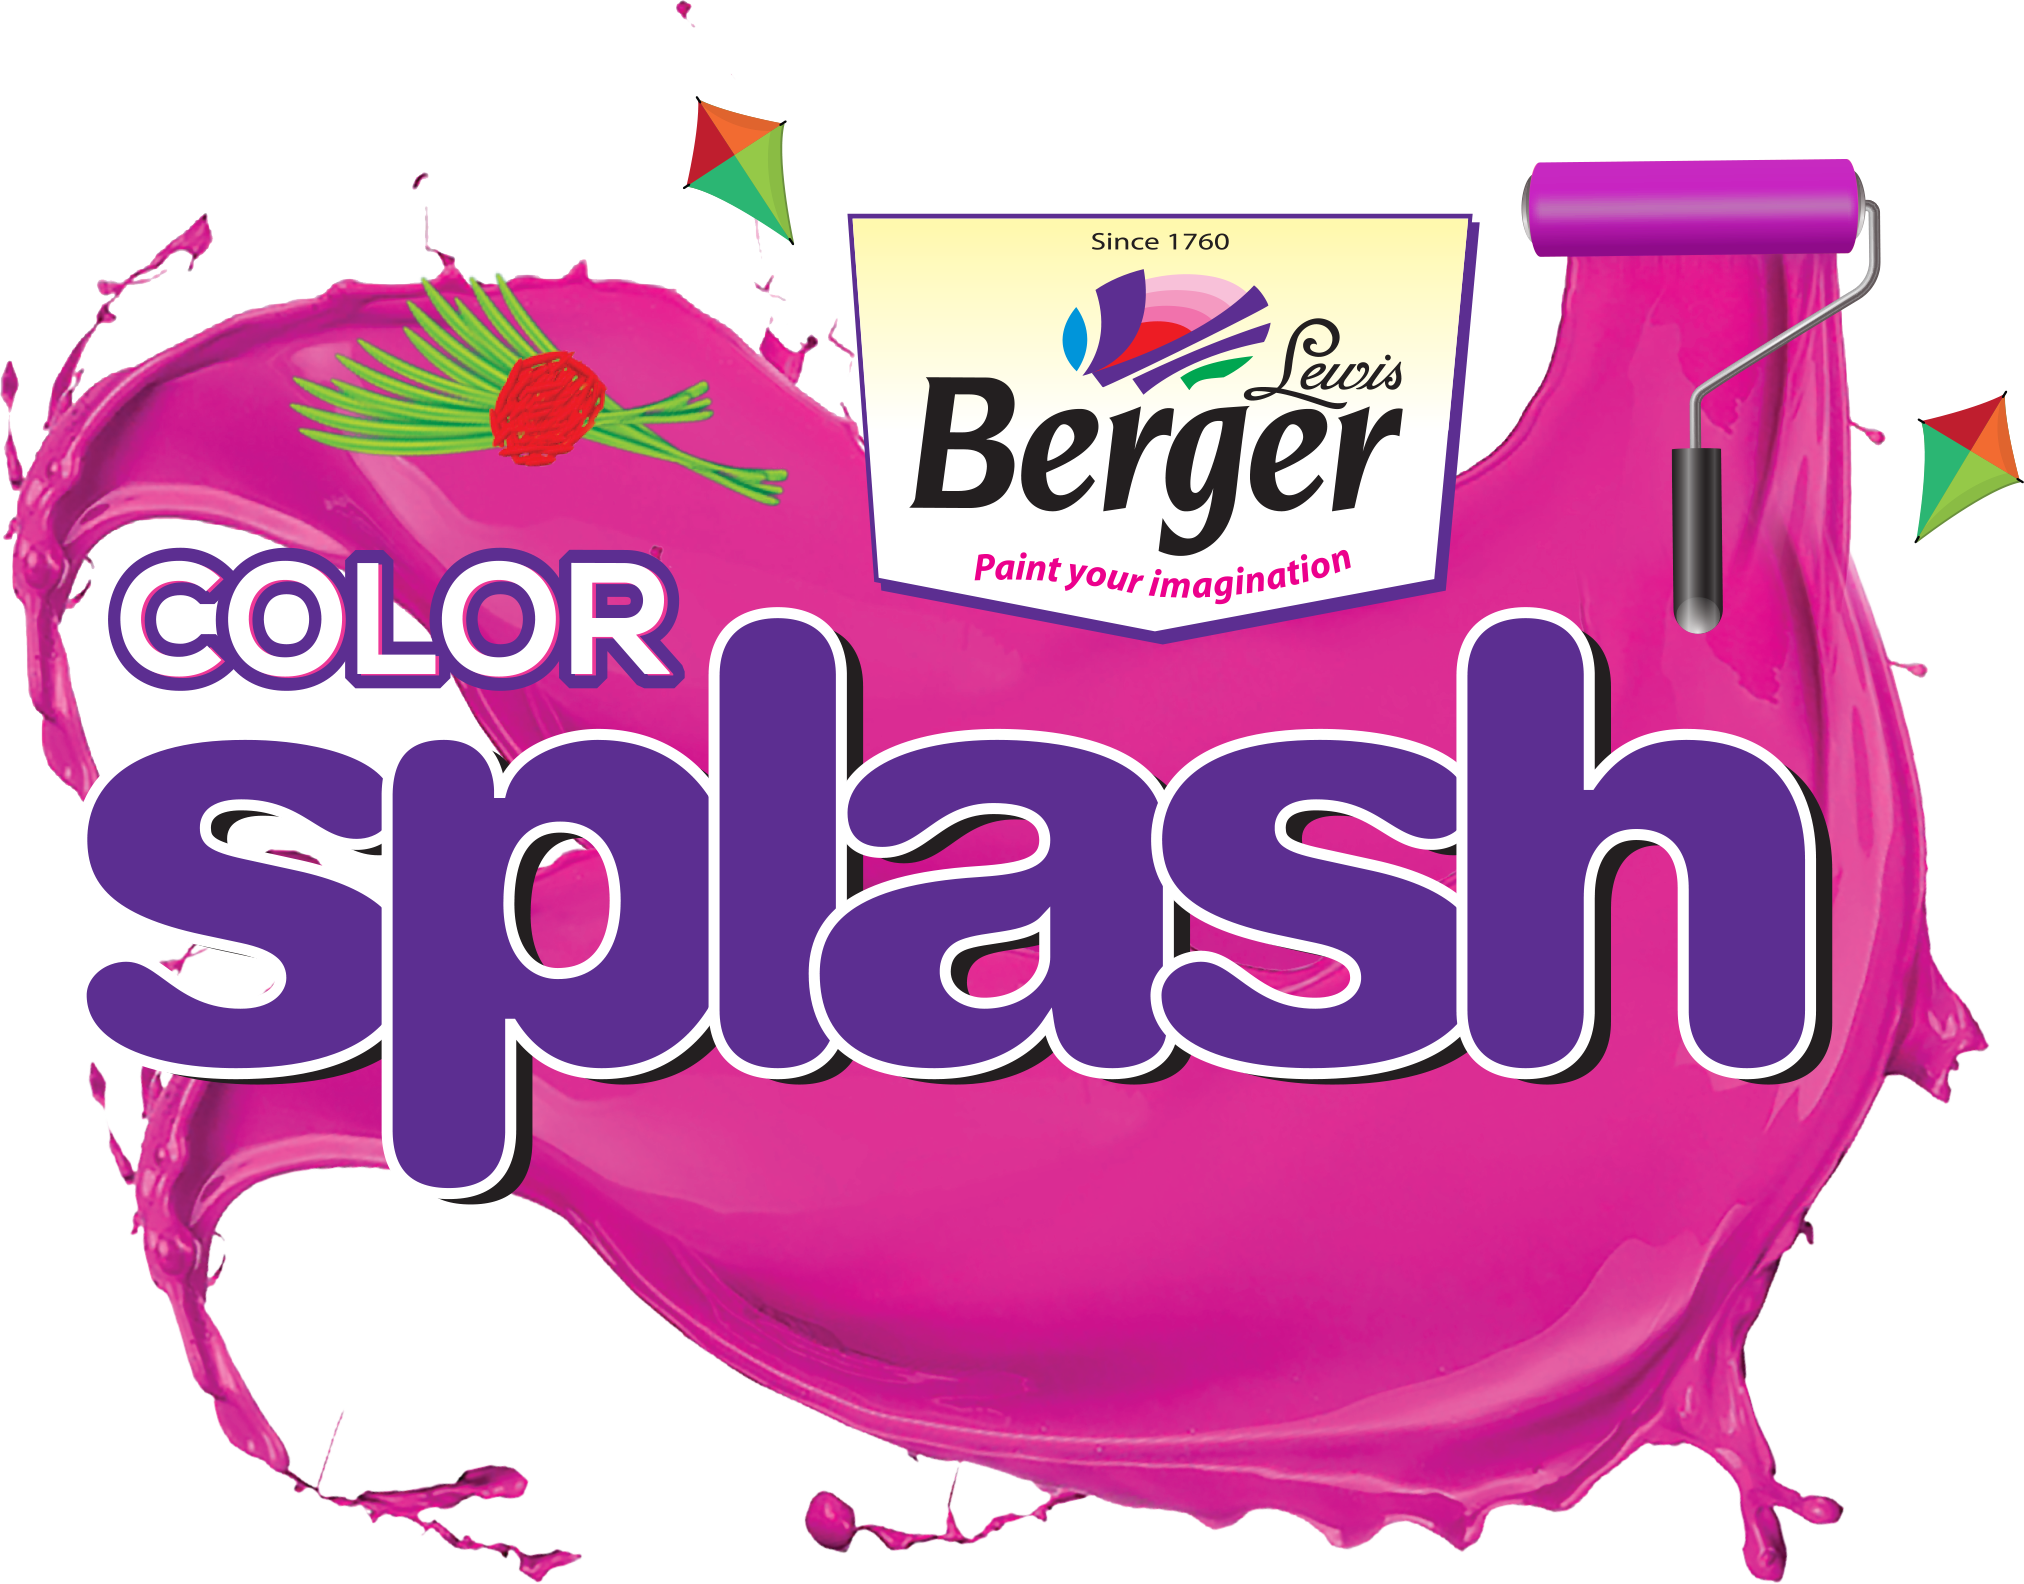 Berger Paints launches ‘Color Splash’ scheme for Dashain, Tihar